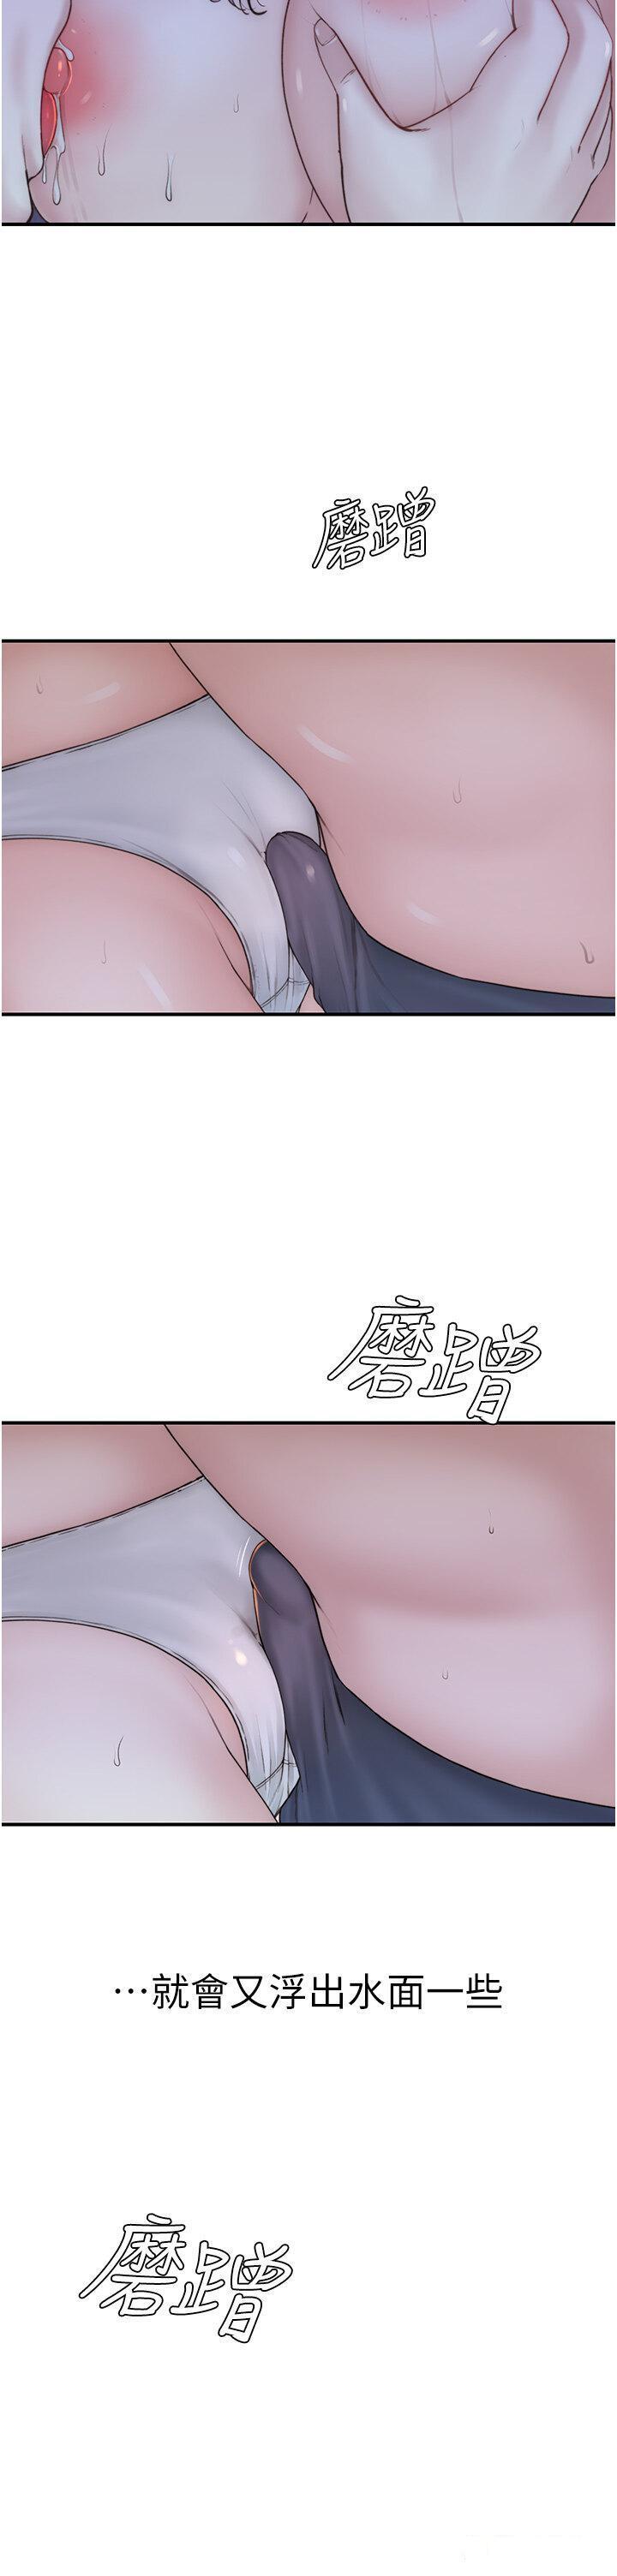 韩国污漫画 繼母的香味 第24话 渐渐变成儿子的形状 39